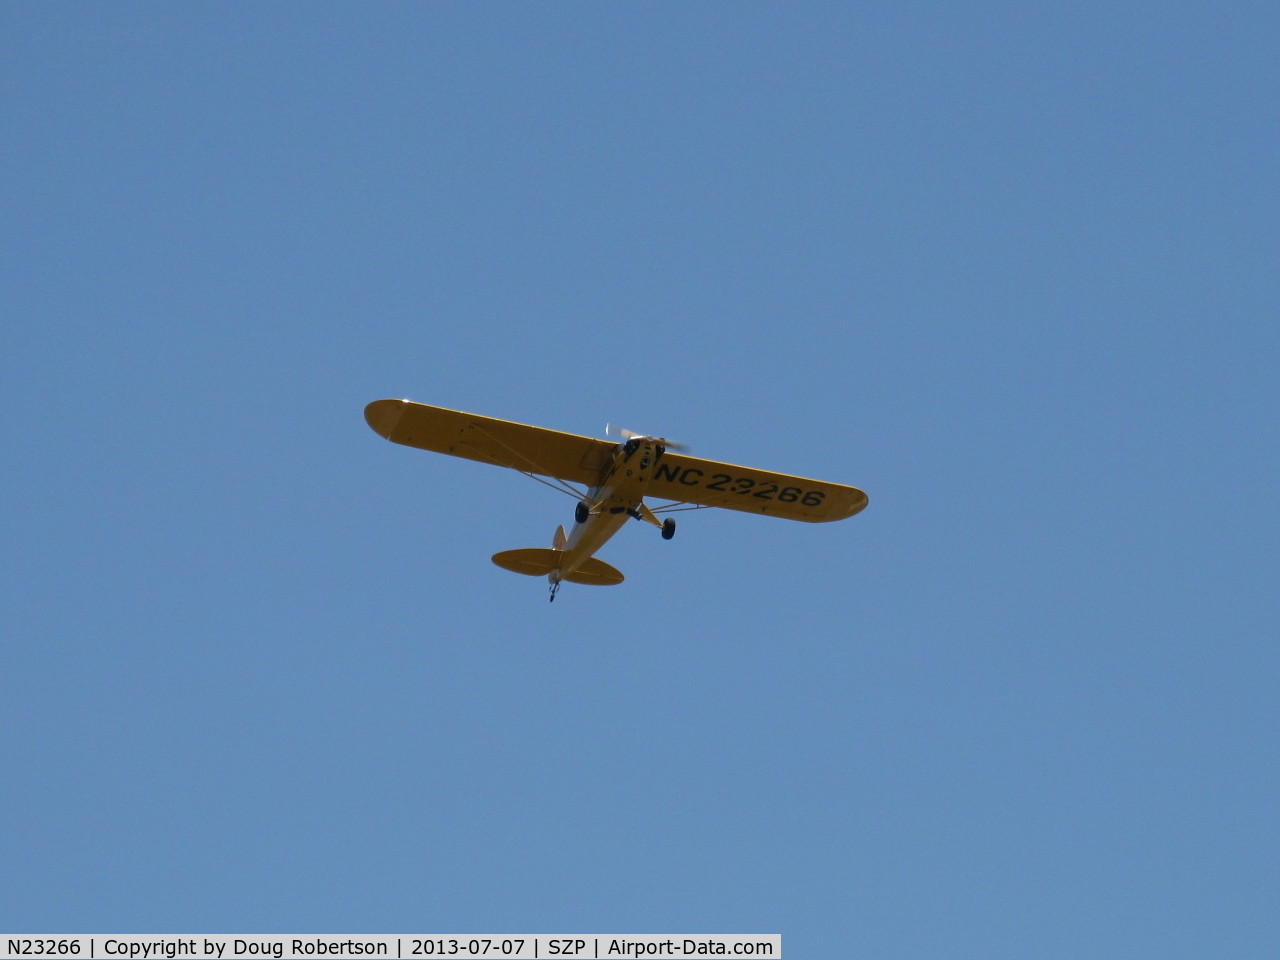 N23266, 1939 Piper J3C-65 Cub Cub C/N 3113, 1939 Piper J3C-65 CUB, Continental A&C65 65 Hp, takeoff climb Rwy 22